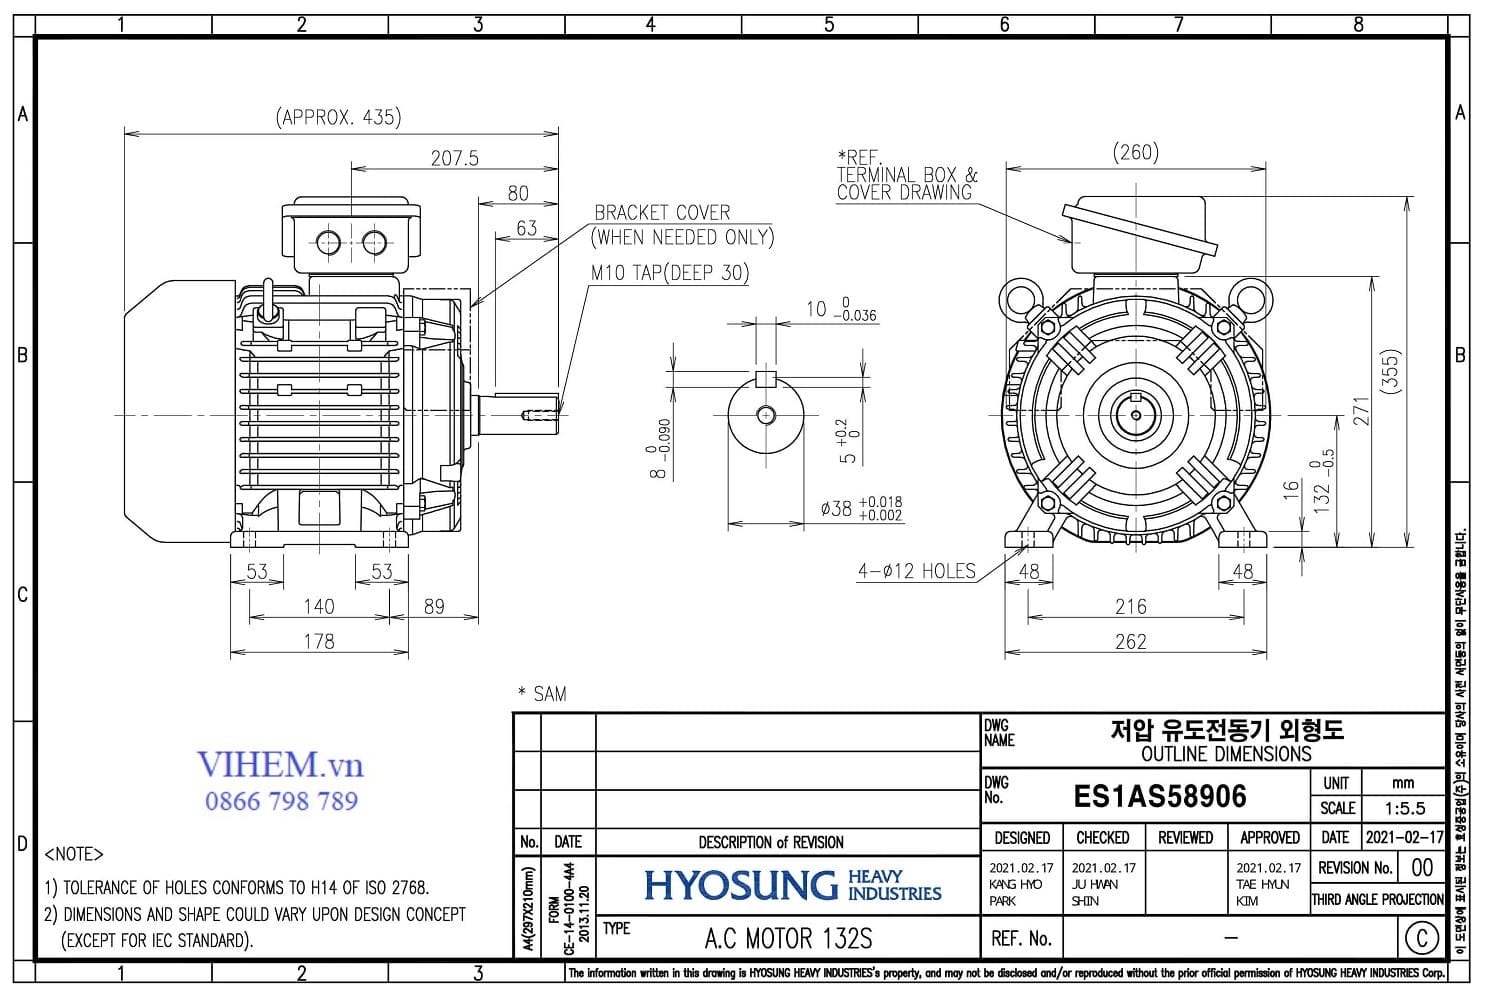 Kích thước lắp đặt & thống số kỹ thuật Motor HYOSUNG 3kW - 6P (1000 r/min)